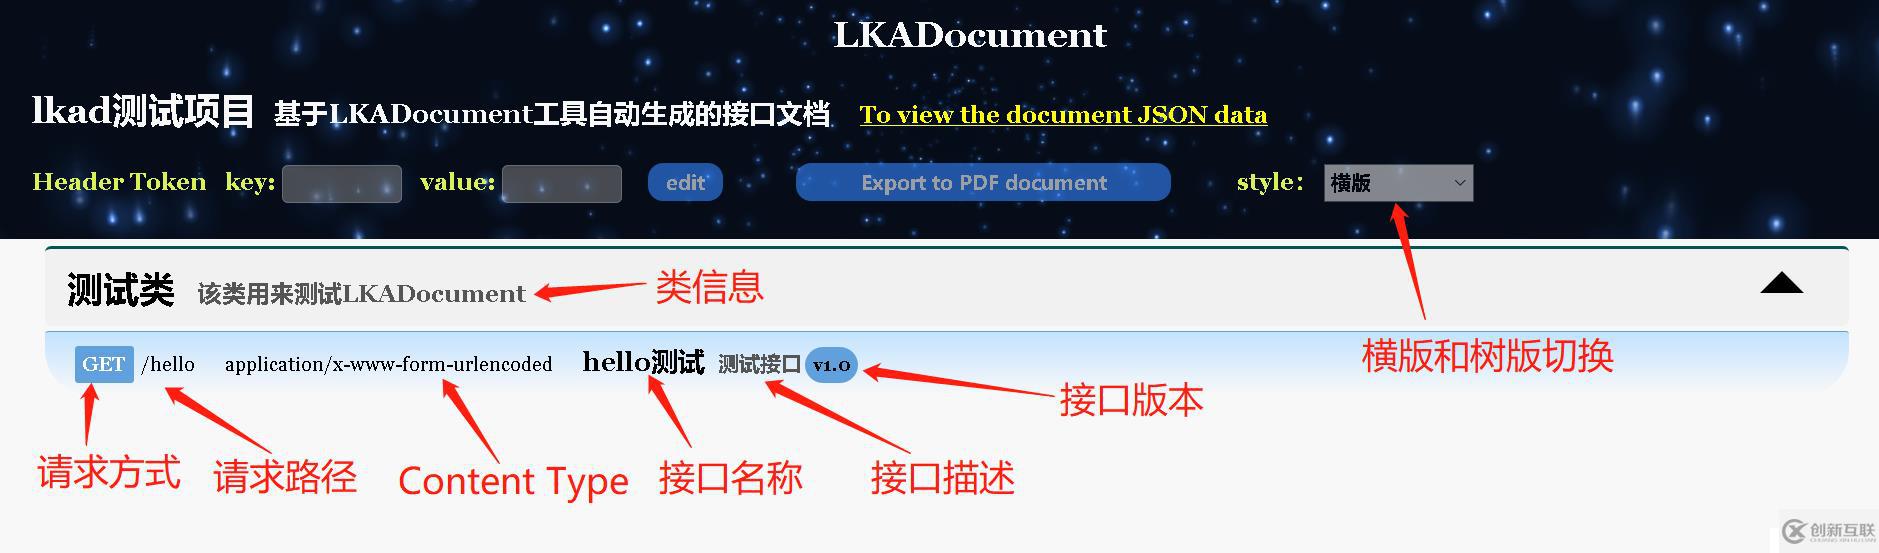 告别手写接口文档时代，比Swagger功能更强大的LKADocument接口文档管理框架诞生了！